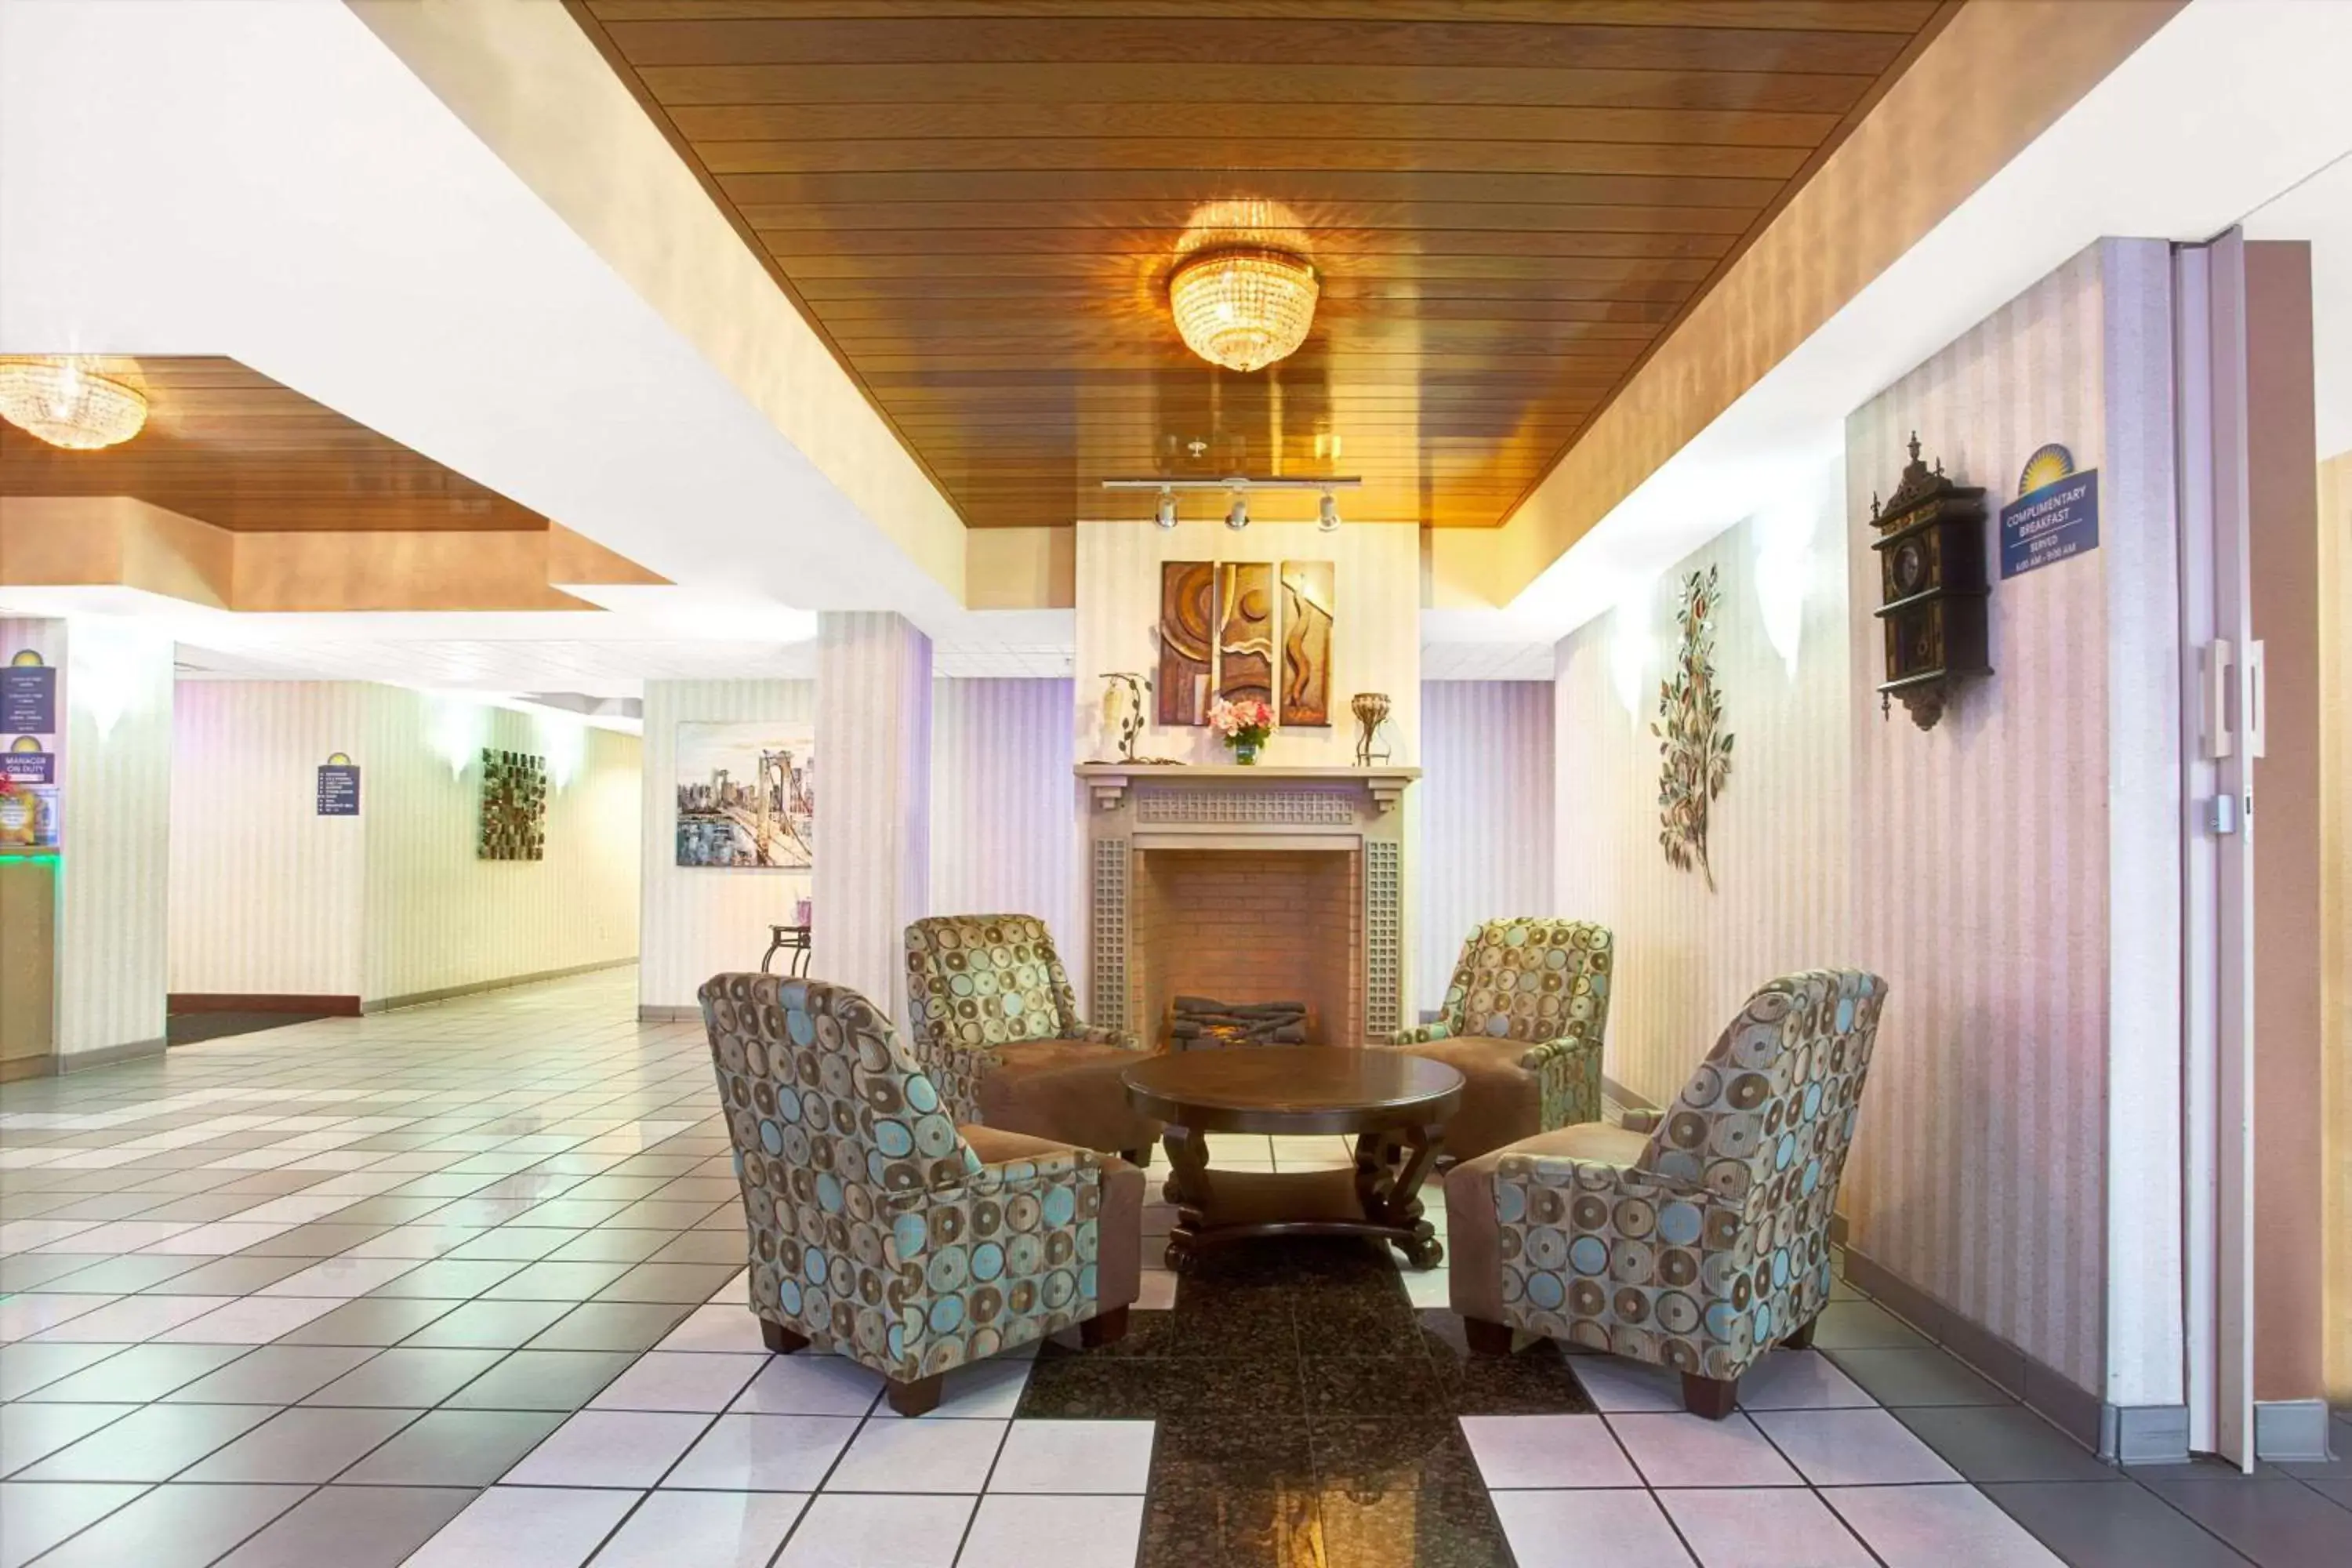 Lobby or reception, Lobby/Reception in Days Inn & Suites by Wyndham Ridgeland